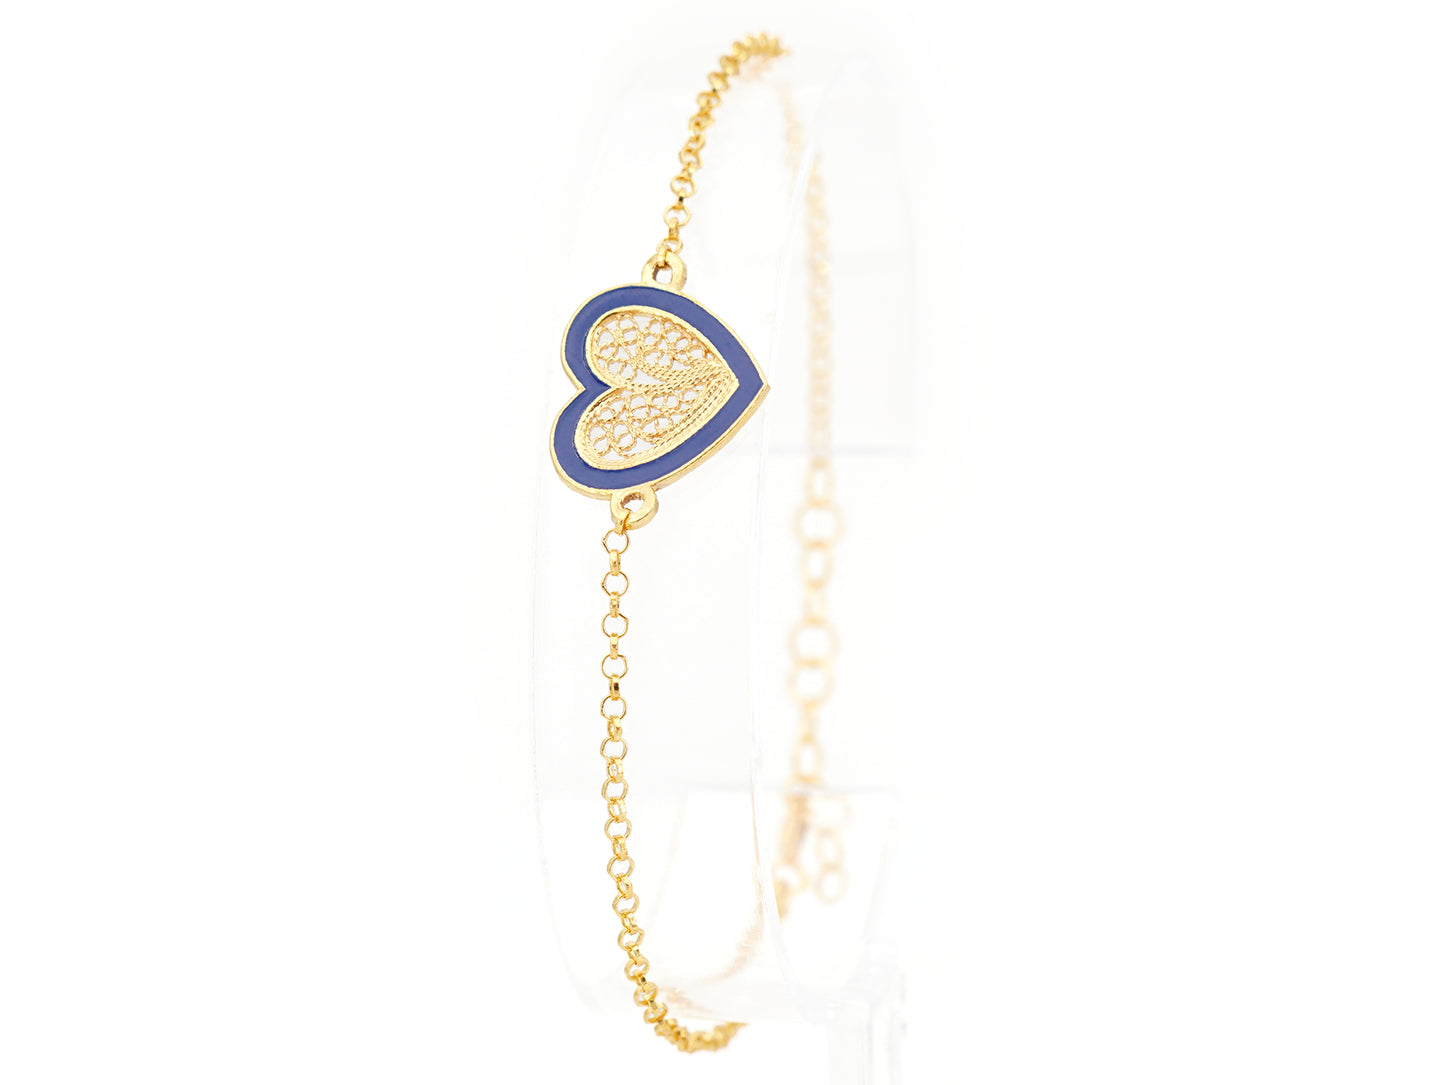 Pulseira Coração Médio Esmalte Azul, Filigrana Portuguesa, Prata de Lei 925 Dourada - Pulseira em exposição